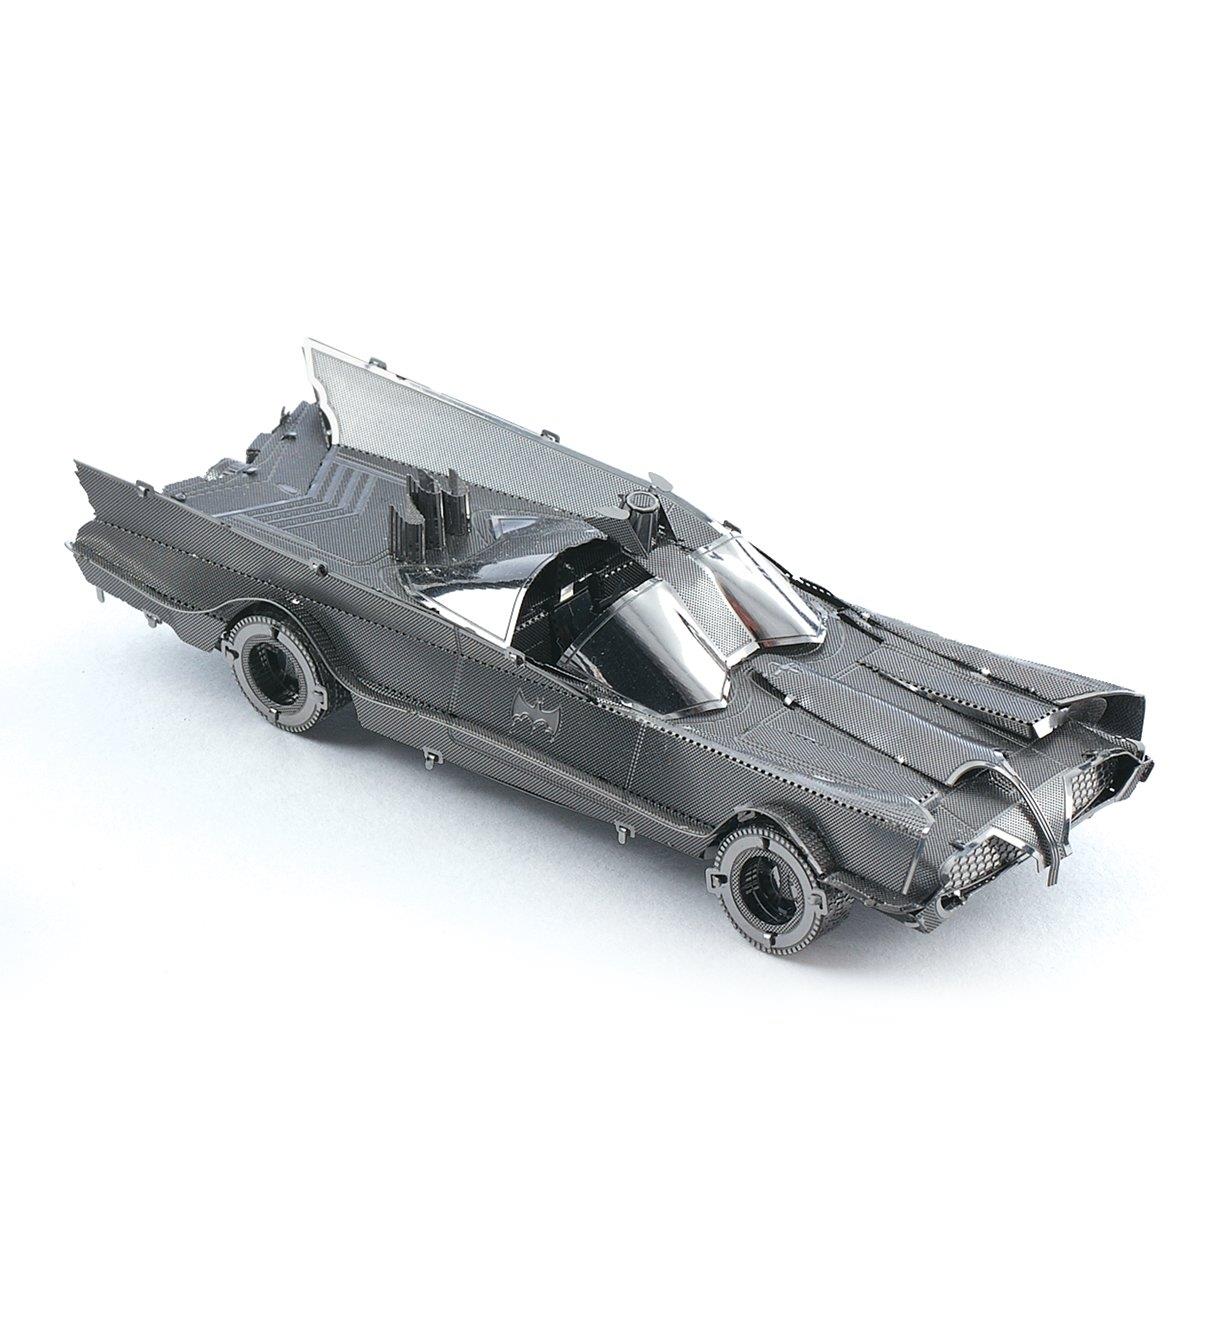 45K4130 - TV Series Batmobile Metal Model Kit